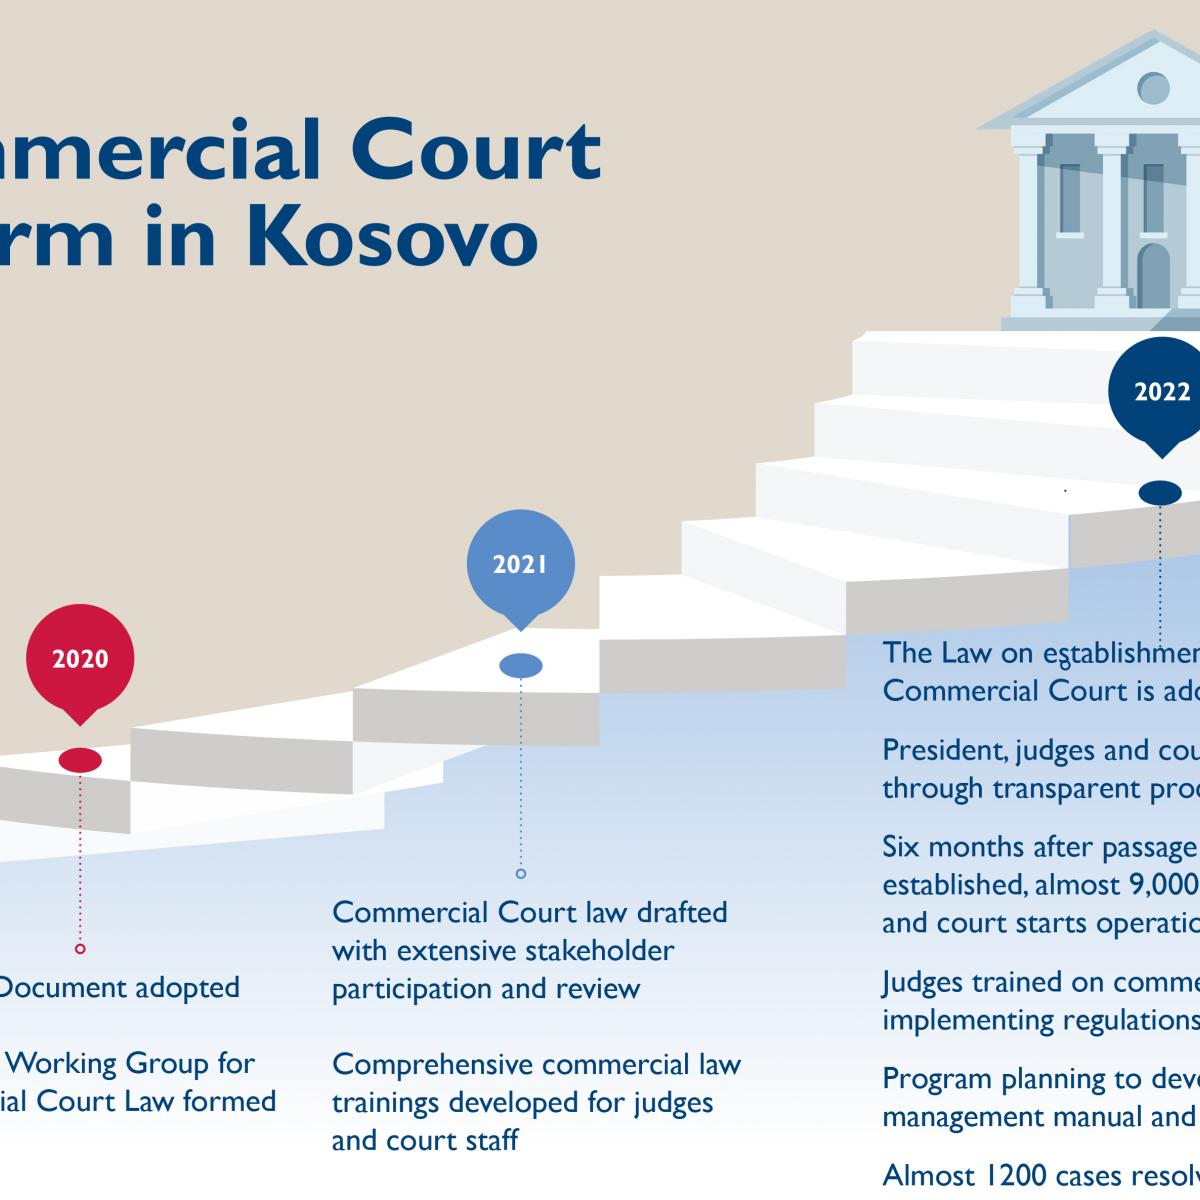 Një vit me suksese - Gjykata Komerciale e Kosovës feston vitin e saj të parë!